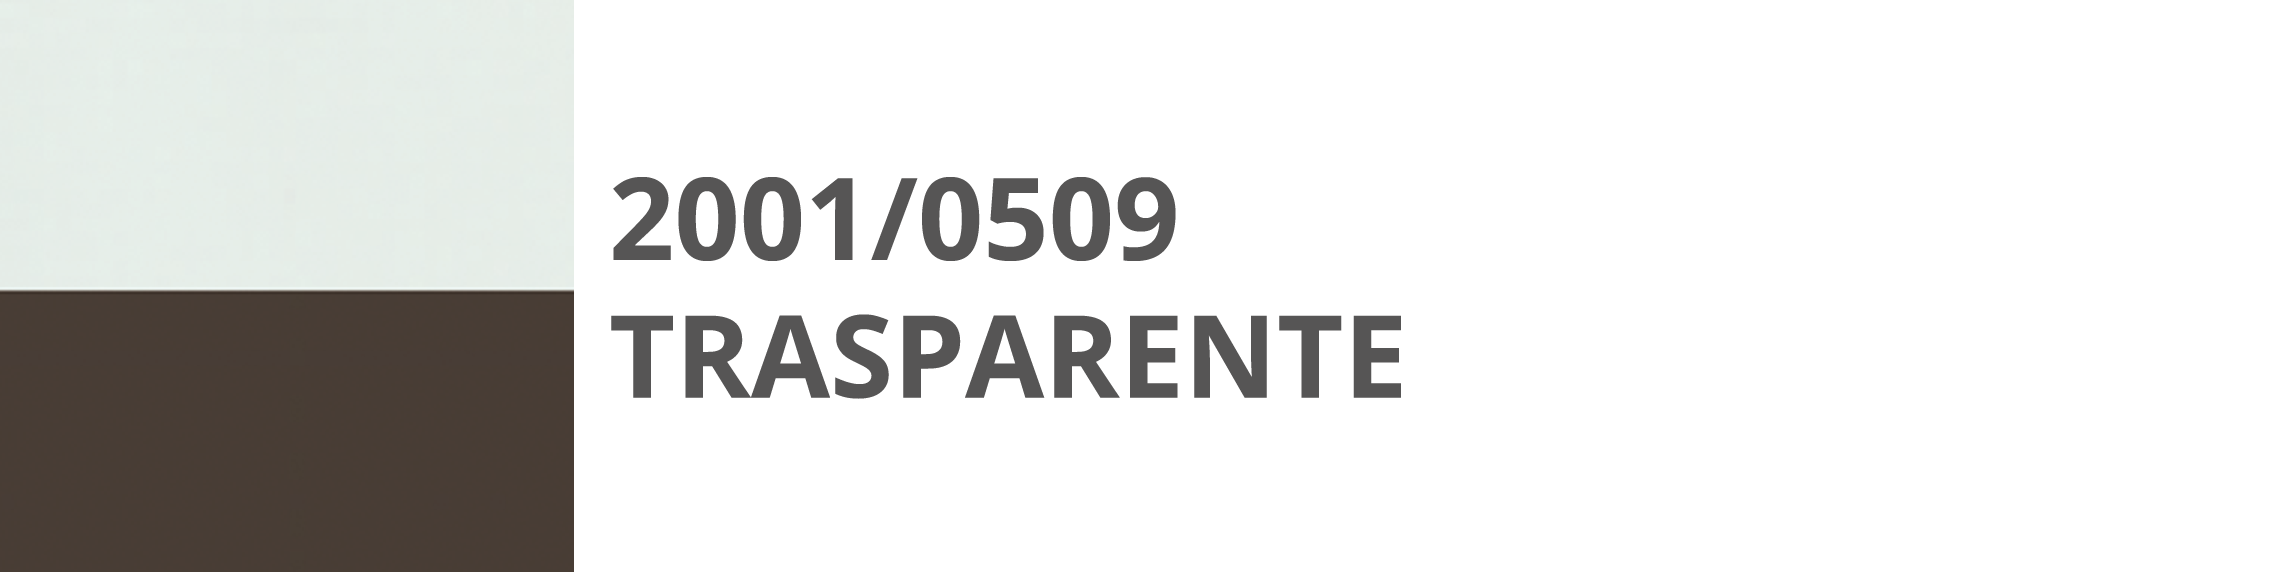 2001 509 Trasparente